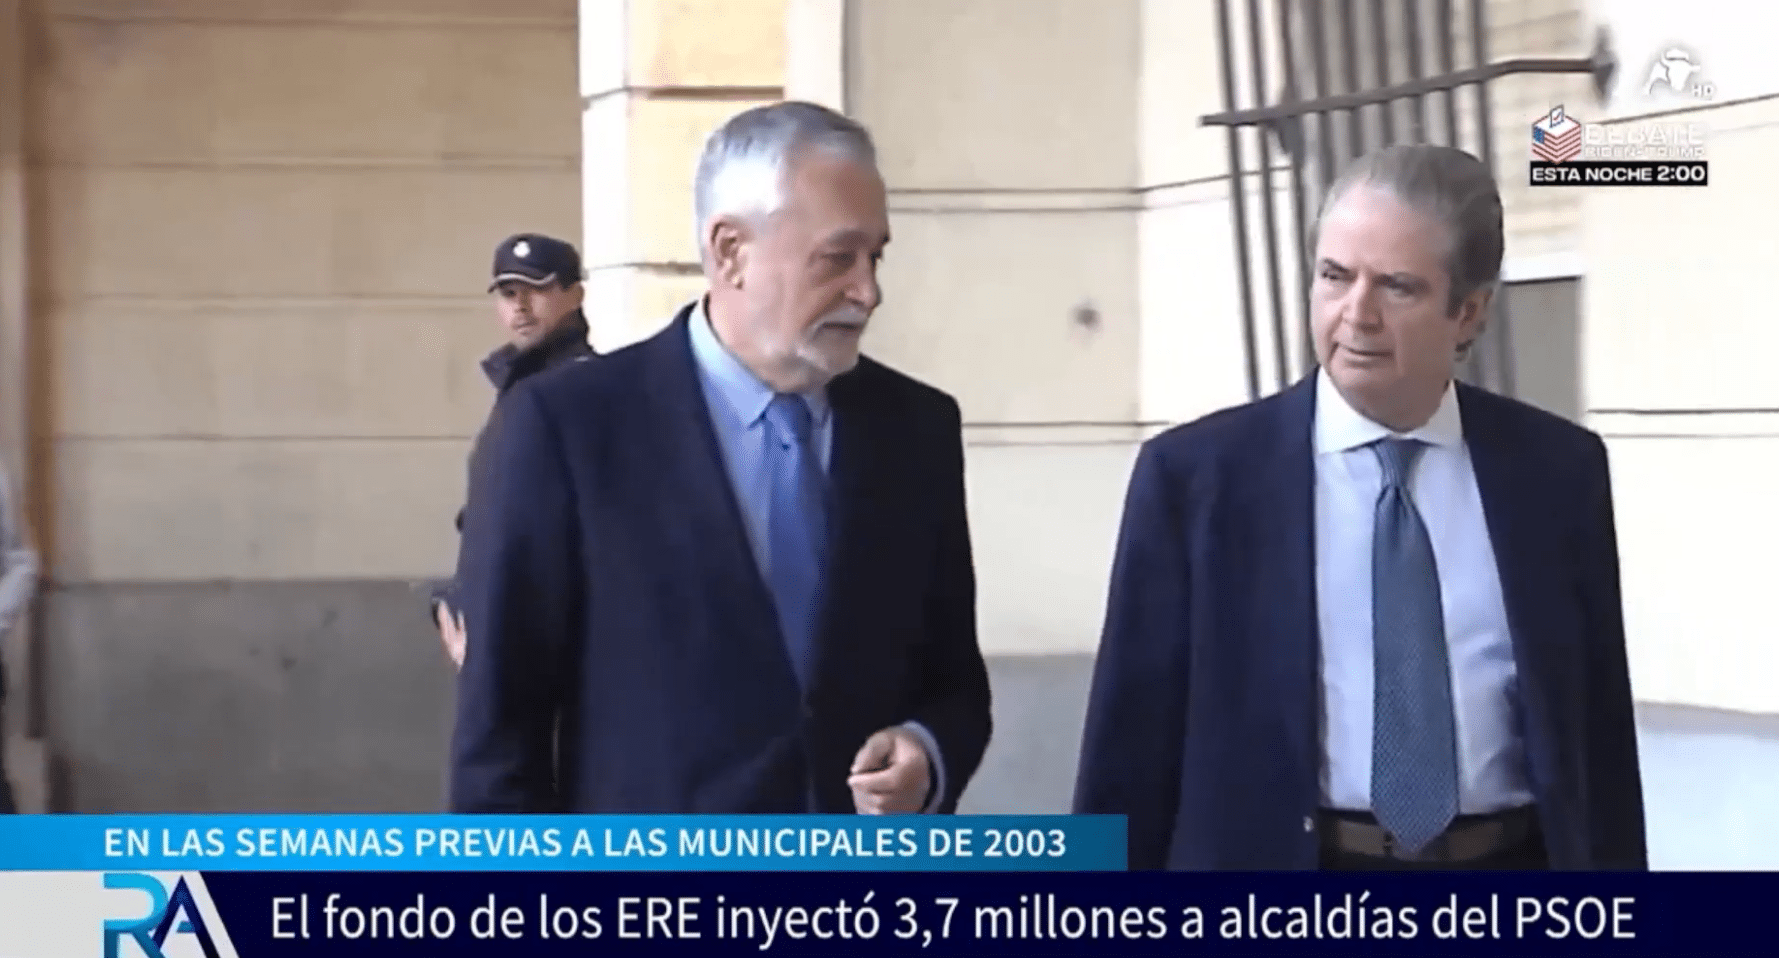 La Junta de Andalucía inyectó 3,7 millones de euros de los ERE a 13 alcaldes socialistas antes de las municipales del 2003